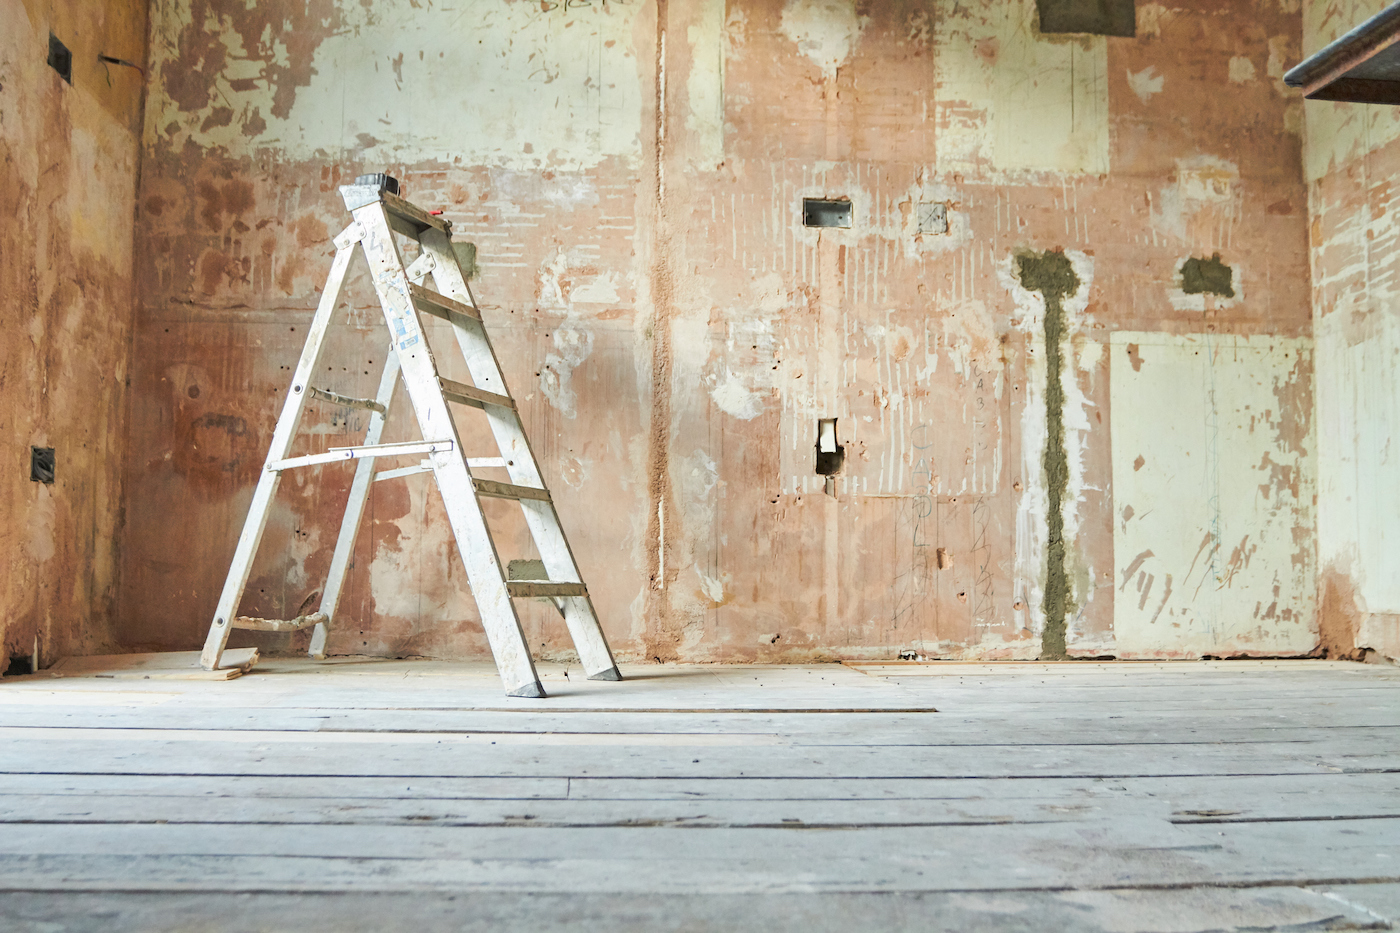 یک نردبان پله ای در یک اتاق خالی داخلی در اواسط بازسازی ایستاده است.